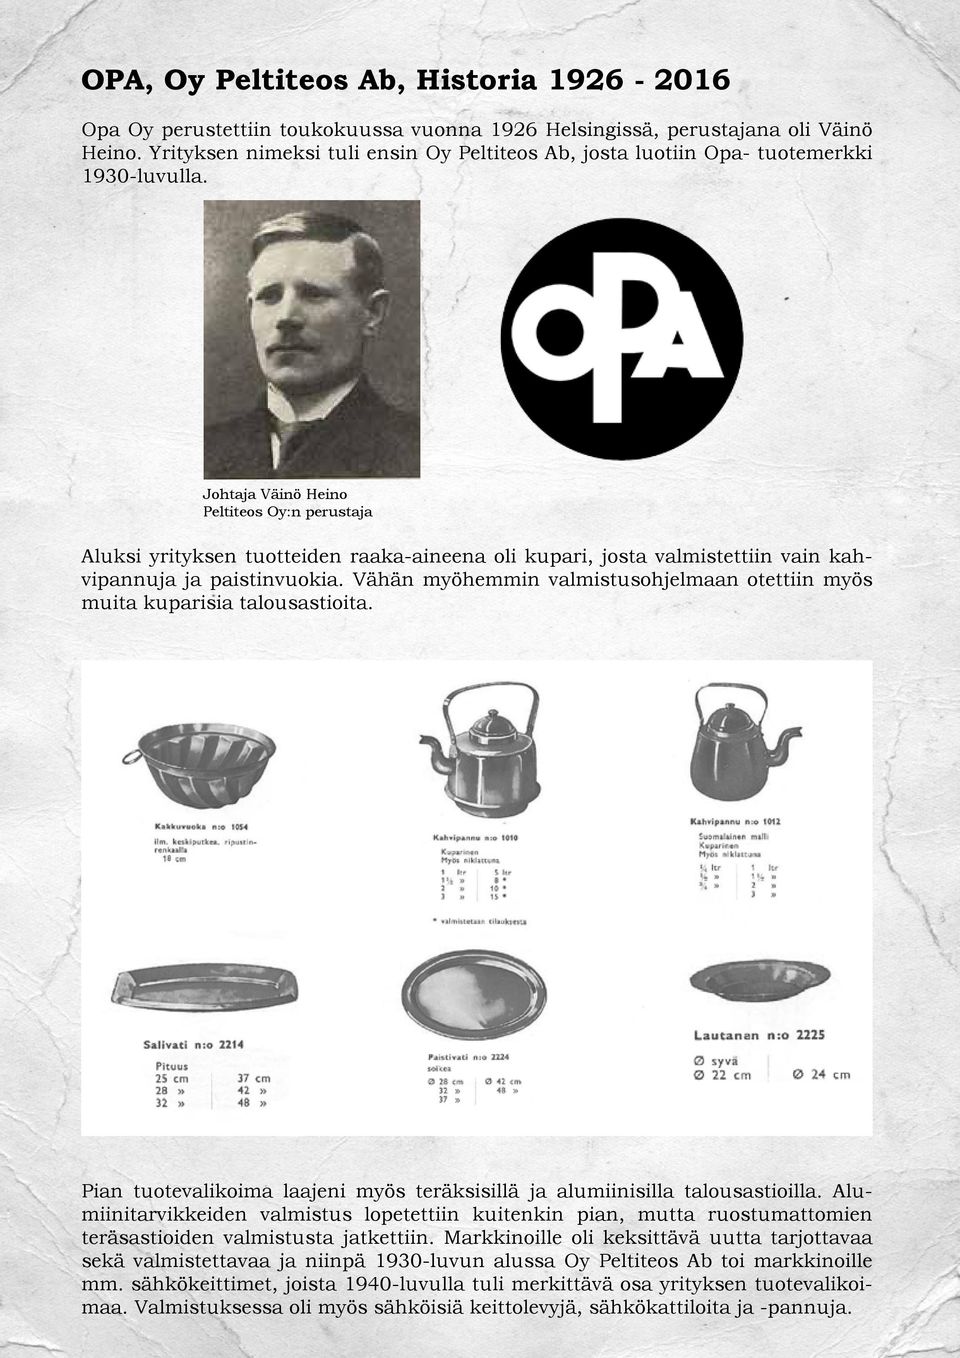 Johtaja Väinö Heino Peltiteos Oy:n perustaja Aluksi yrityksen tuotteiden raaka-aineena oli kupari, josta valmistettiin vain kahvipannuja ja paistinvuokia.